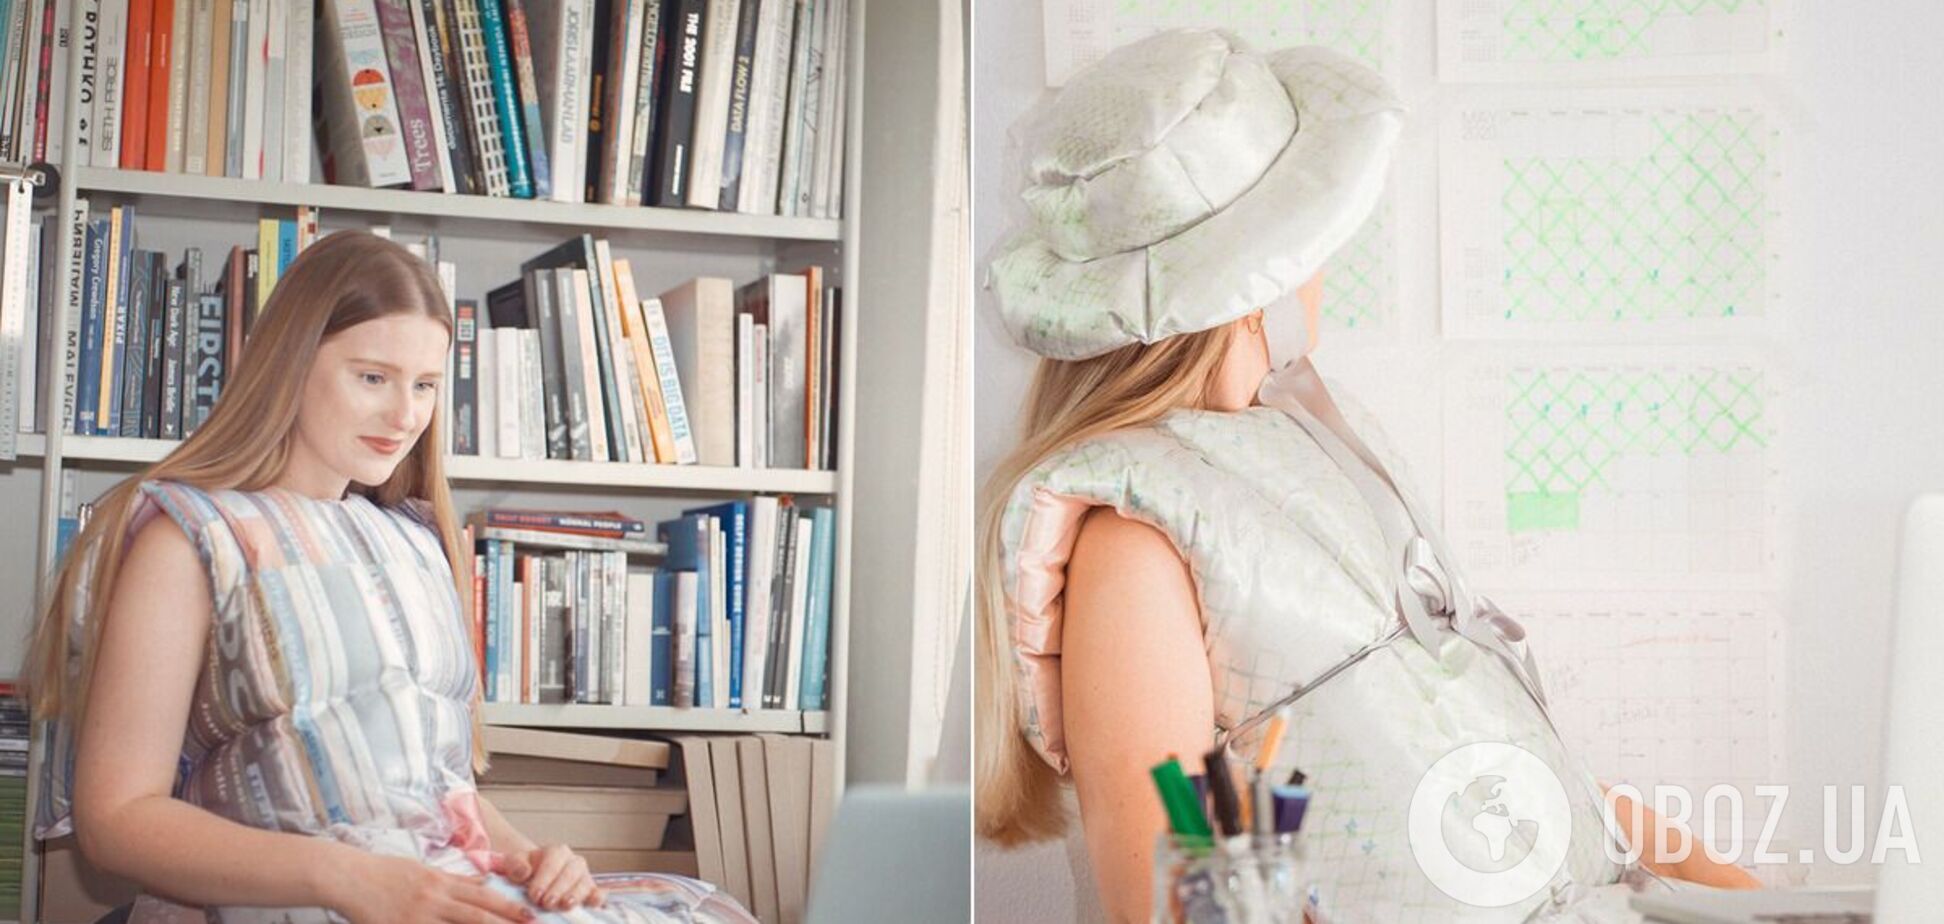 Дизайнер создала одежду из одеял и подушек для самоизоляции: как она выглядит